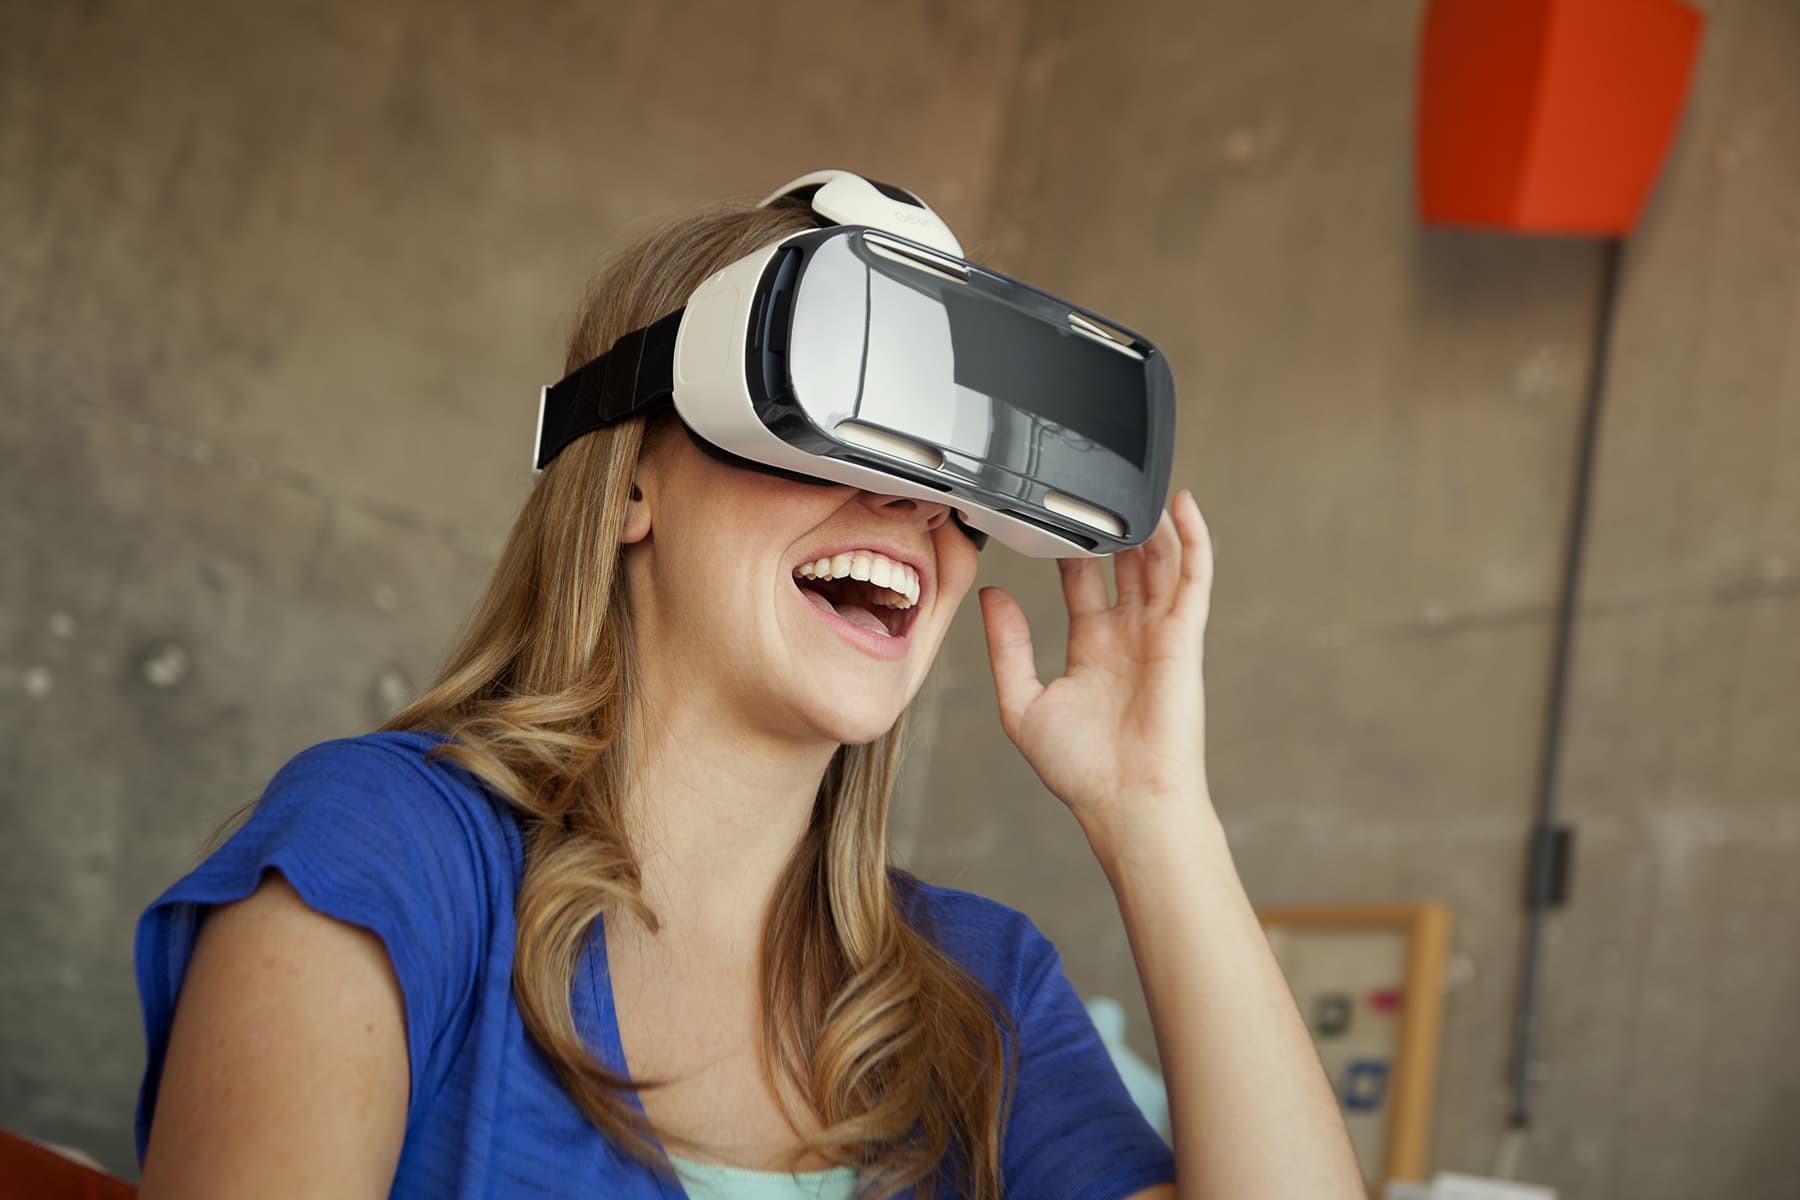 O vr. Шлем виртуальной реальности LG 360 VR. Очки дополненной реальности Samsung. Виар очки самсунг. Очкивир туальнайряльности.